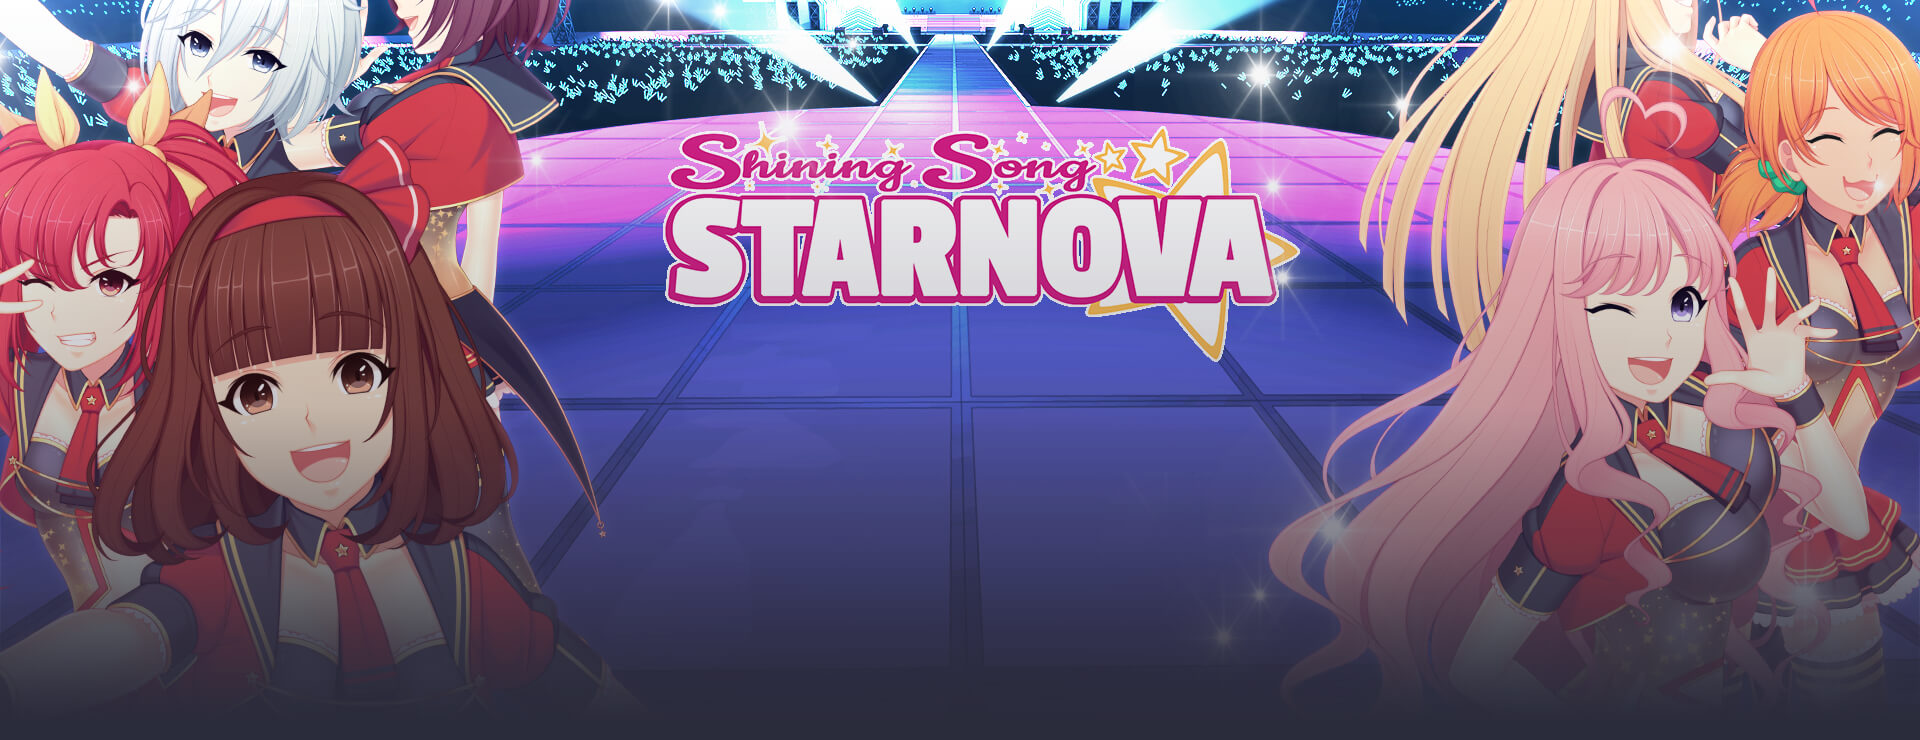 Shining Song Starnova - Visual Novel Game